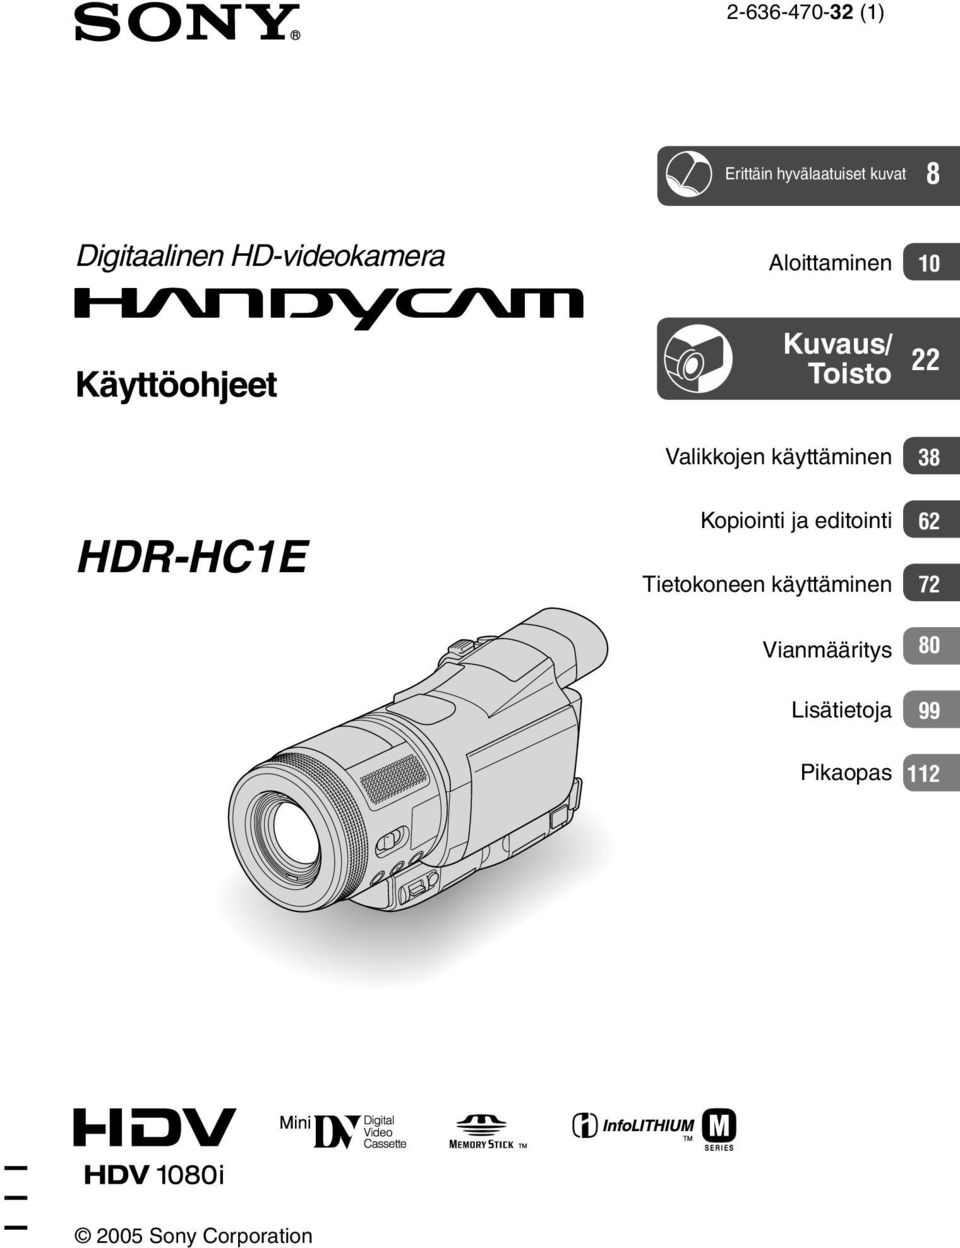 HDR-HC1E Valikkojen käyttäminen Kopiointi ja editointi Tietokoneen